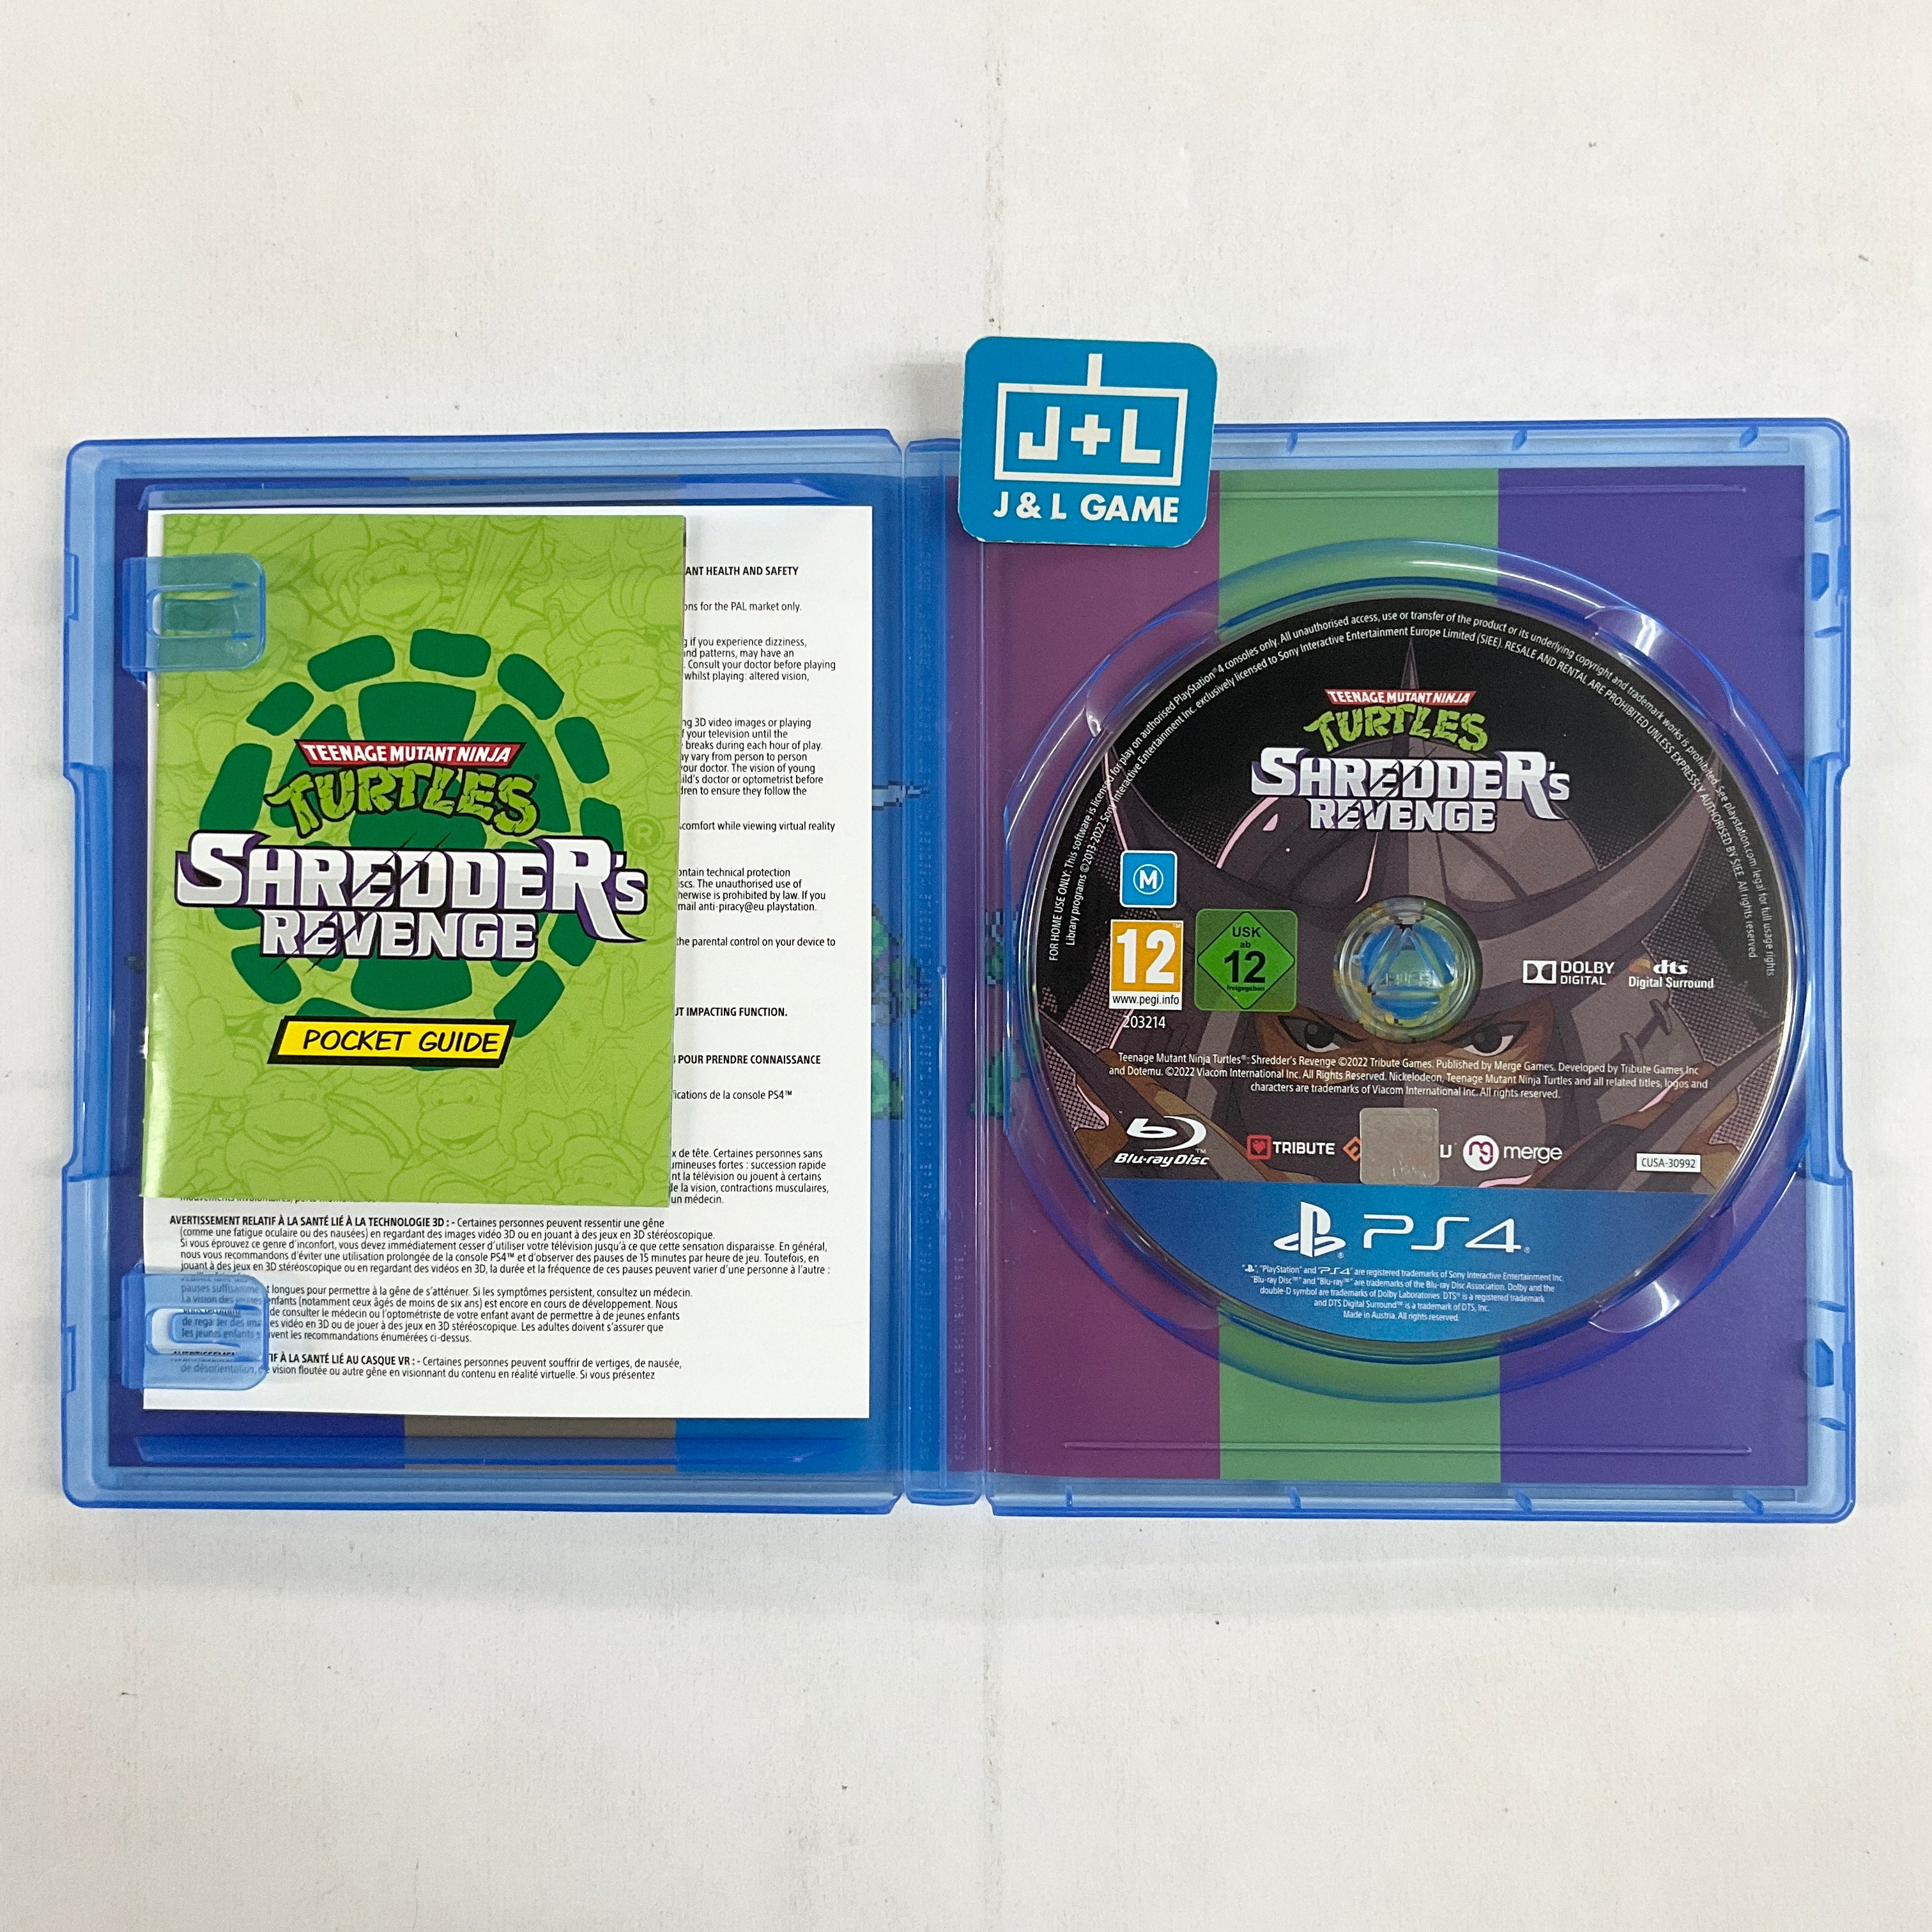 Teenage Mutant Ninja Turtles: Shredder's Revenge - (PS4) PlayStation 4 [Pre-Owned] (European Import) Video Games Merge Games   